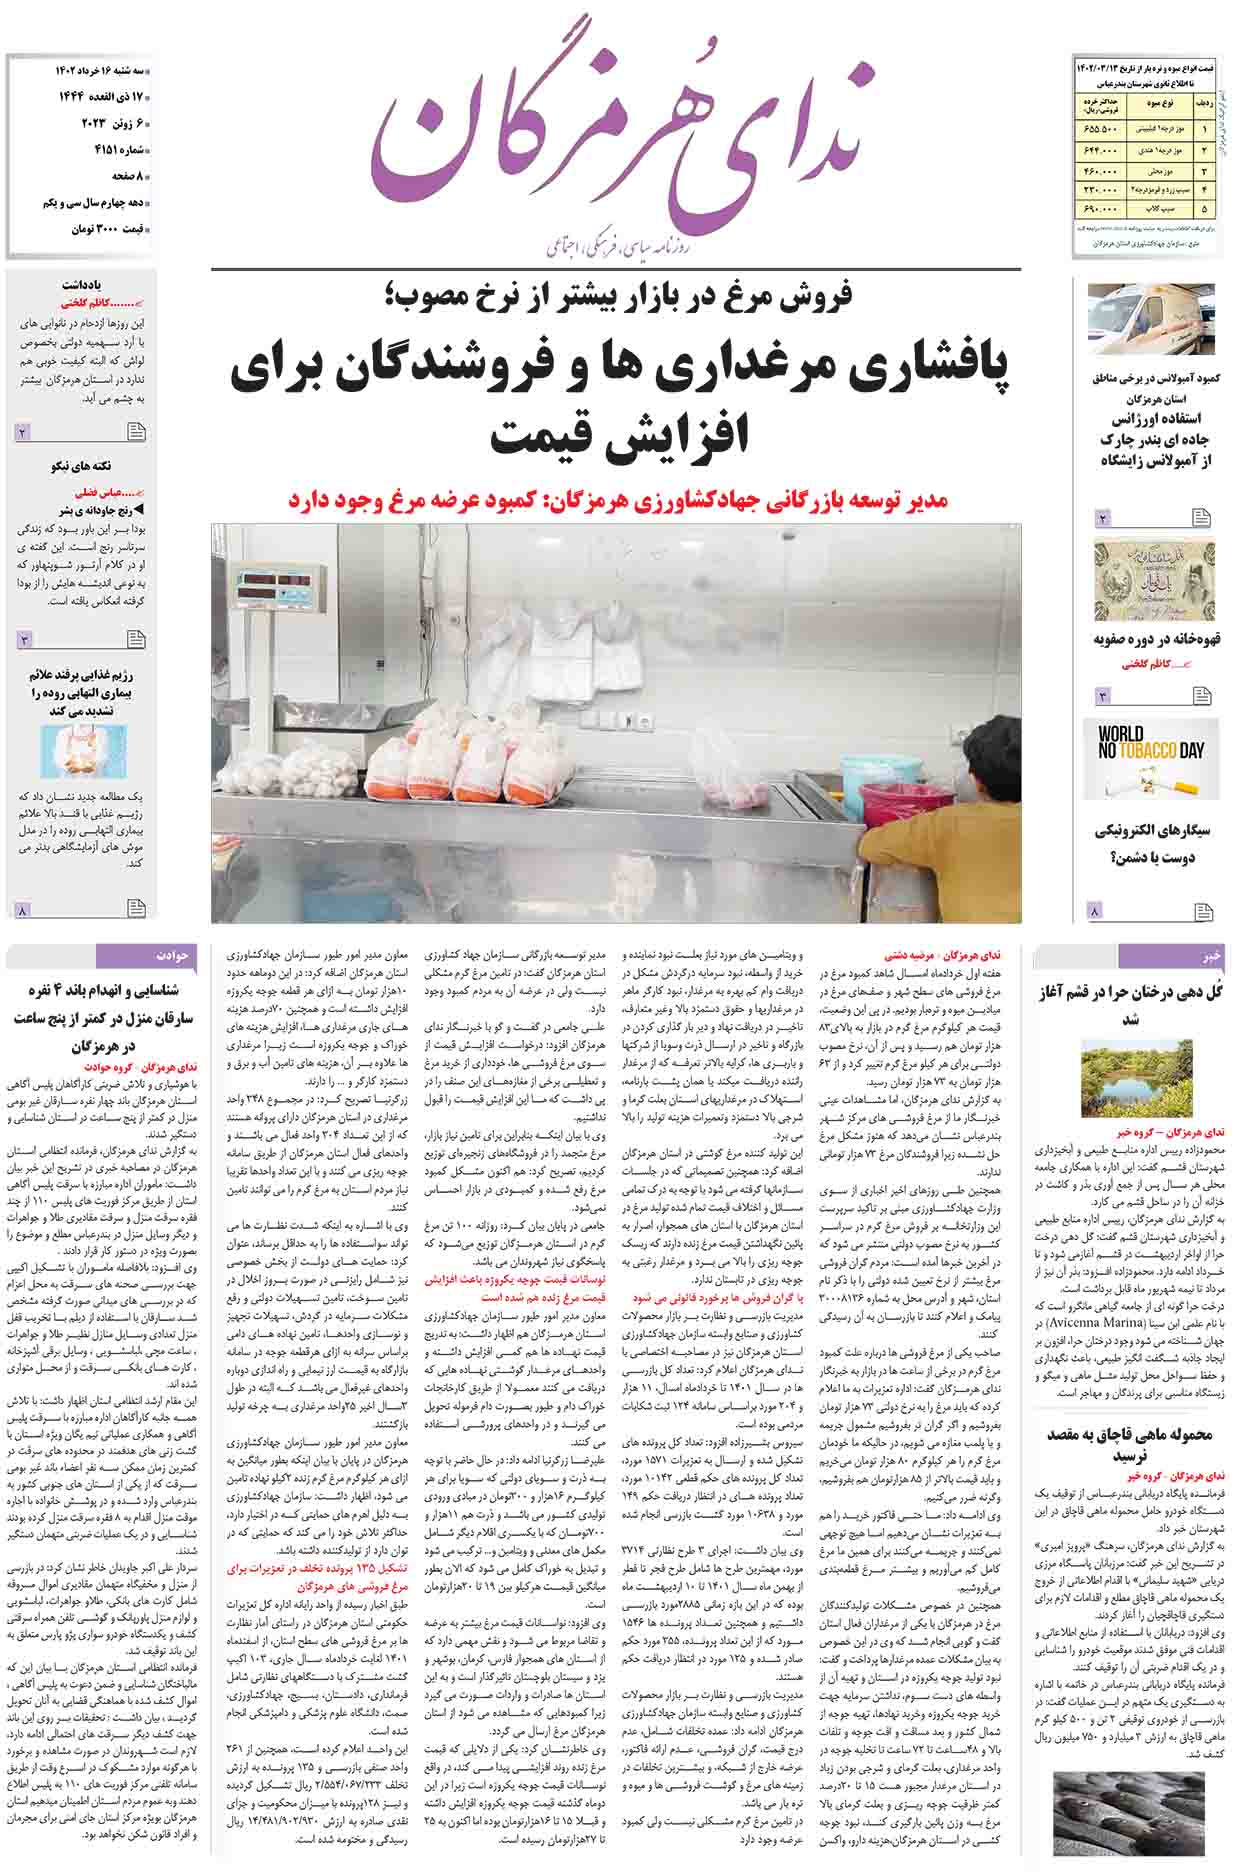 11 3 - در چهل و چهارمین طلیعه فجر انقلاب اسلامی؛ ارائه خدمات رایگان چشم پزشکی و دندانپزشکی به مردم سرگز احمدی